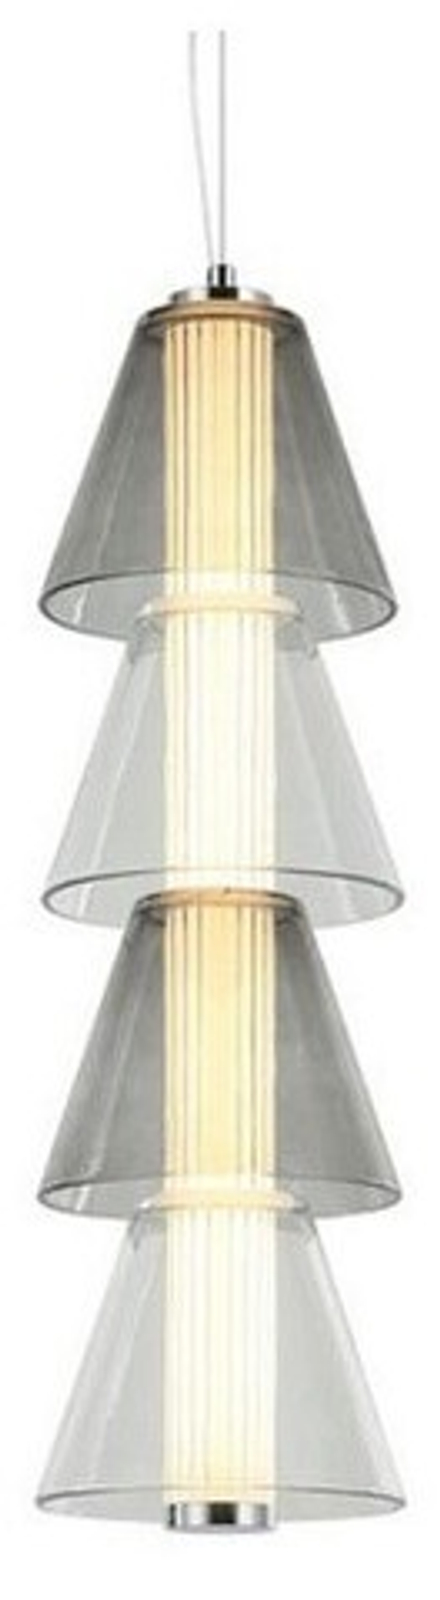 Подвесной светильник Omnilux Sogna OML-51606-15